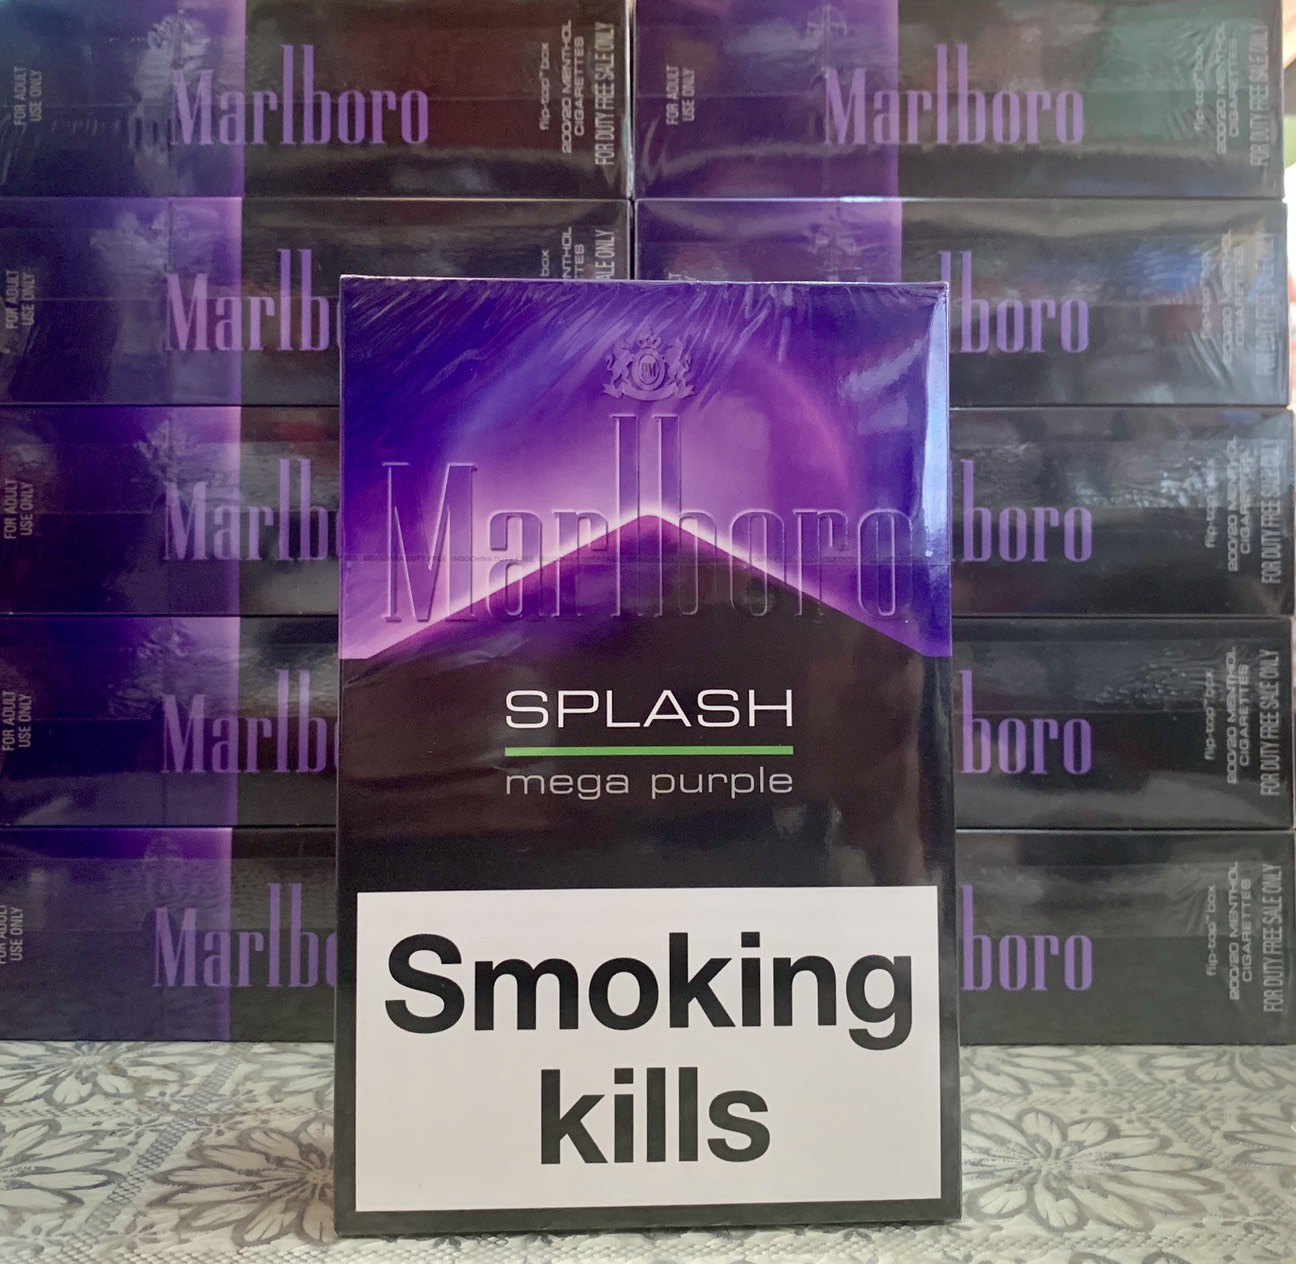 Marlboro Splash Mega Purple